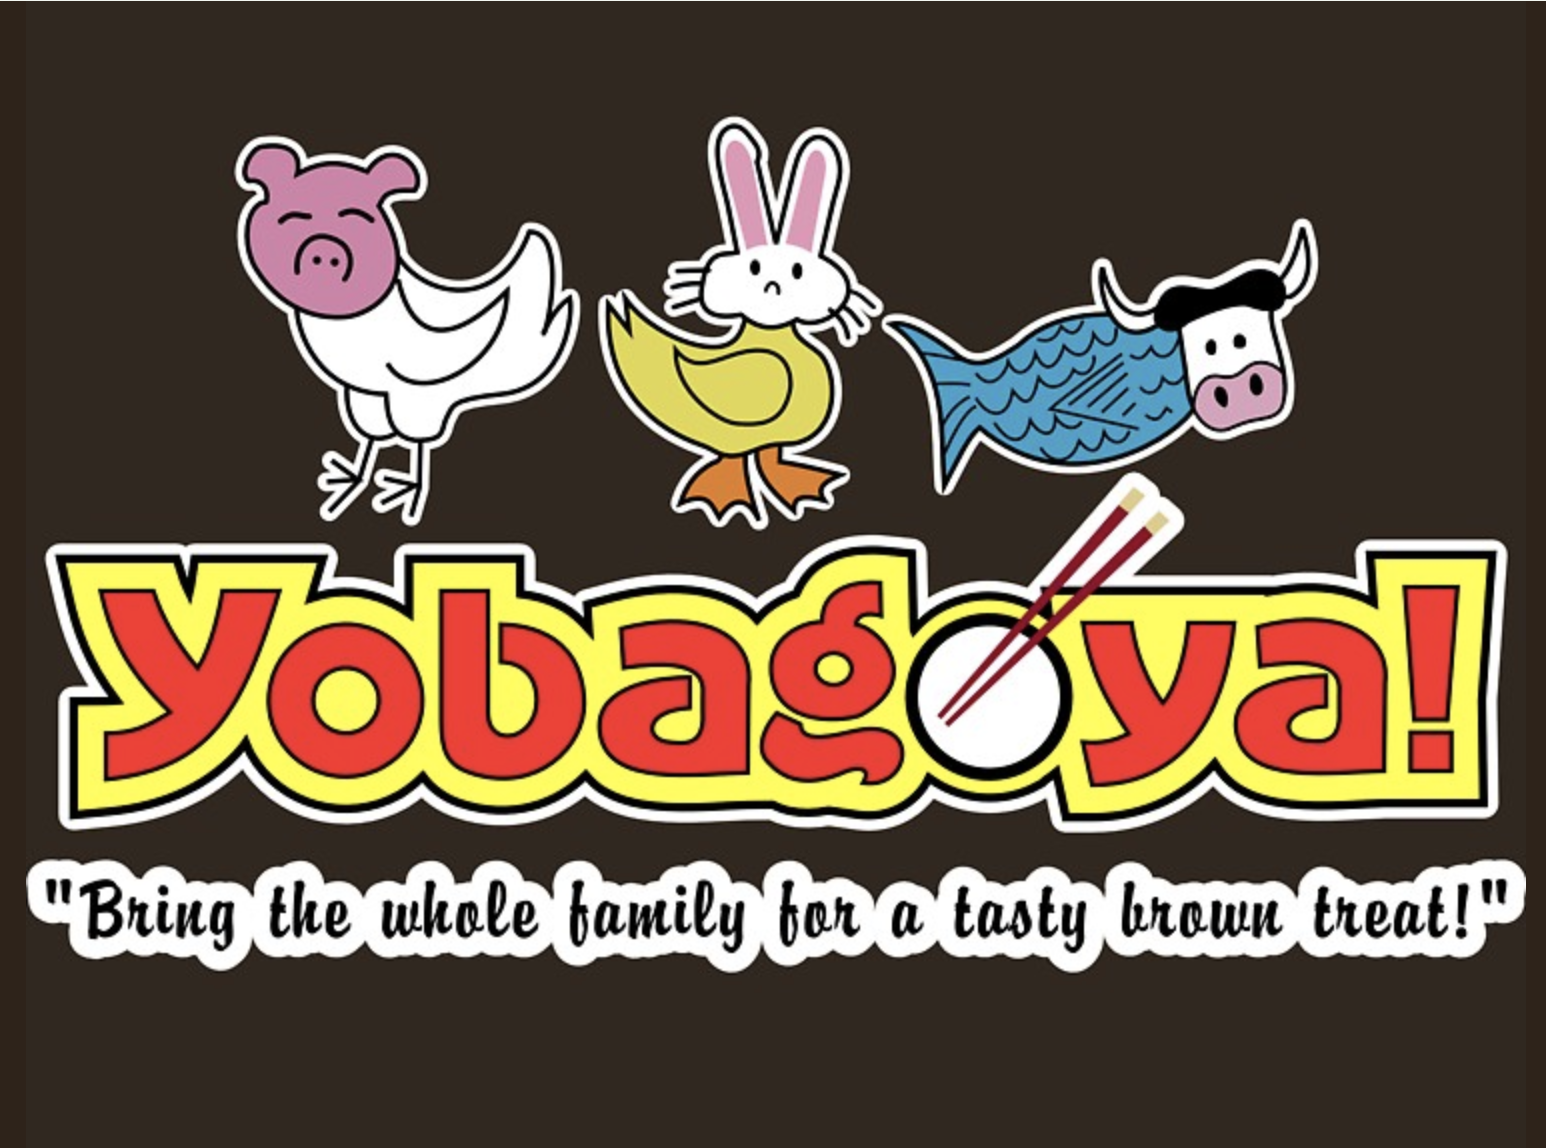 Yobogoya